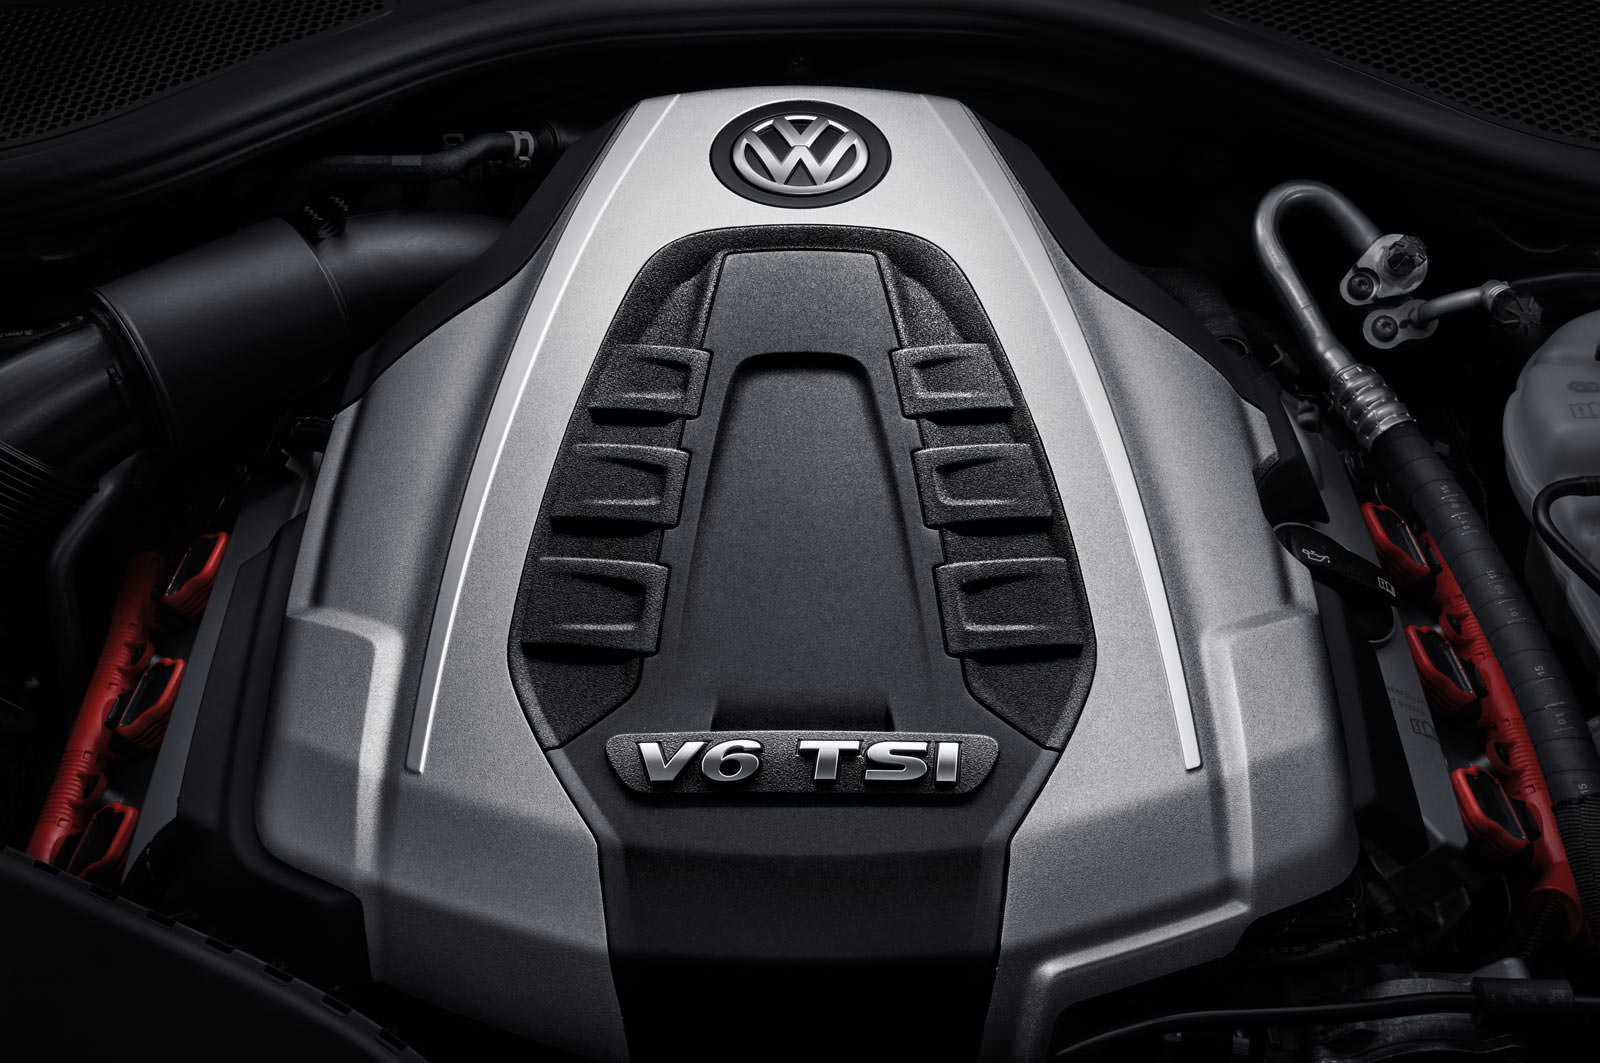 Двигатель V6 TSI под капотом Volkswagen Phideon